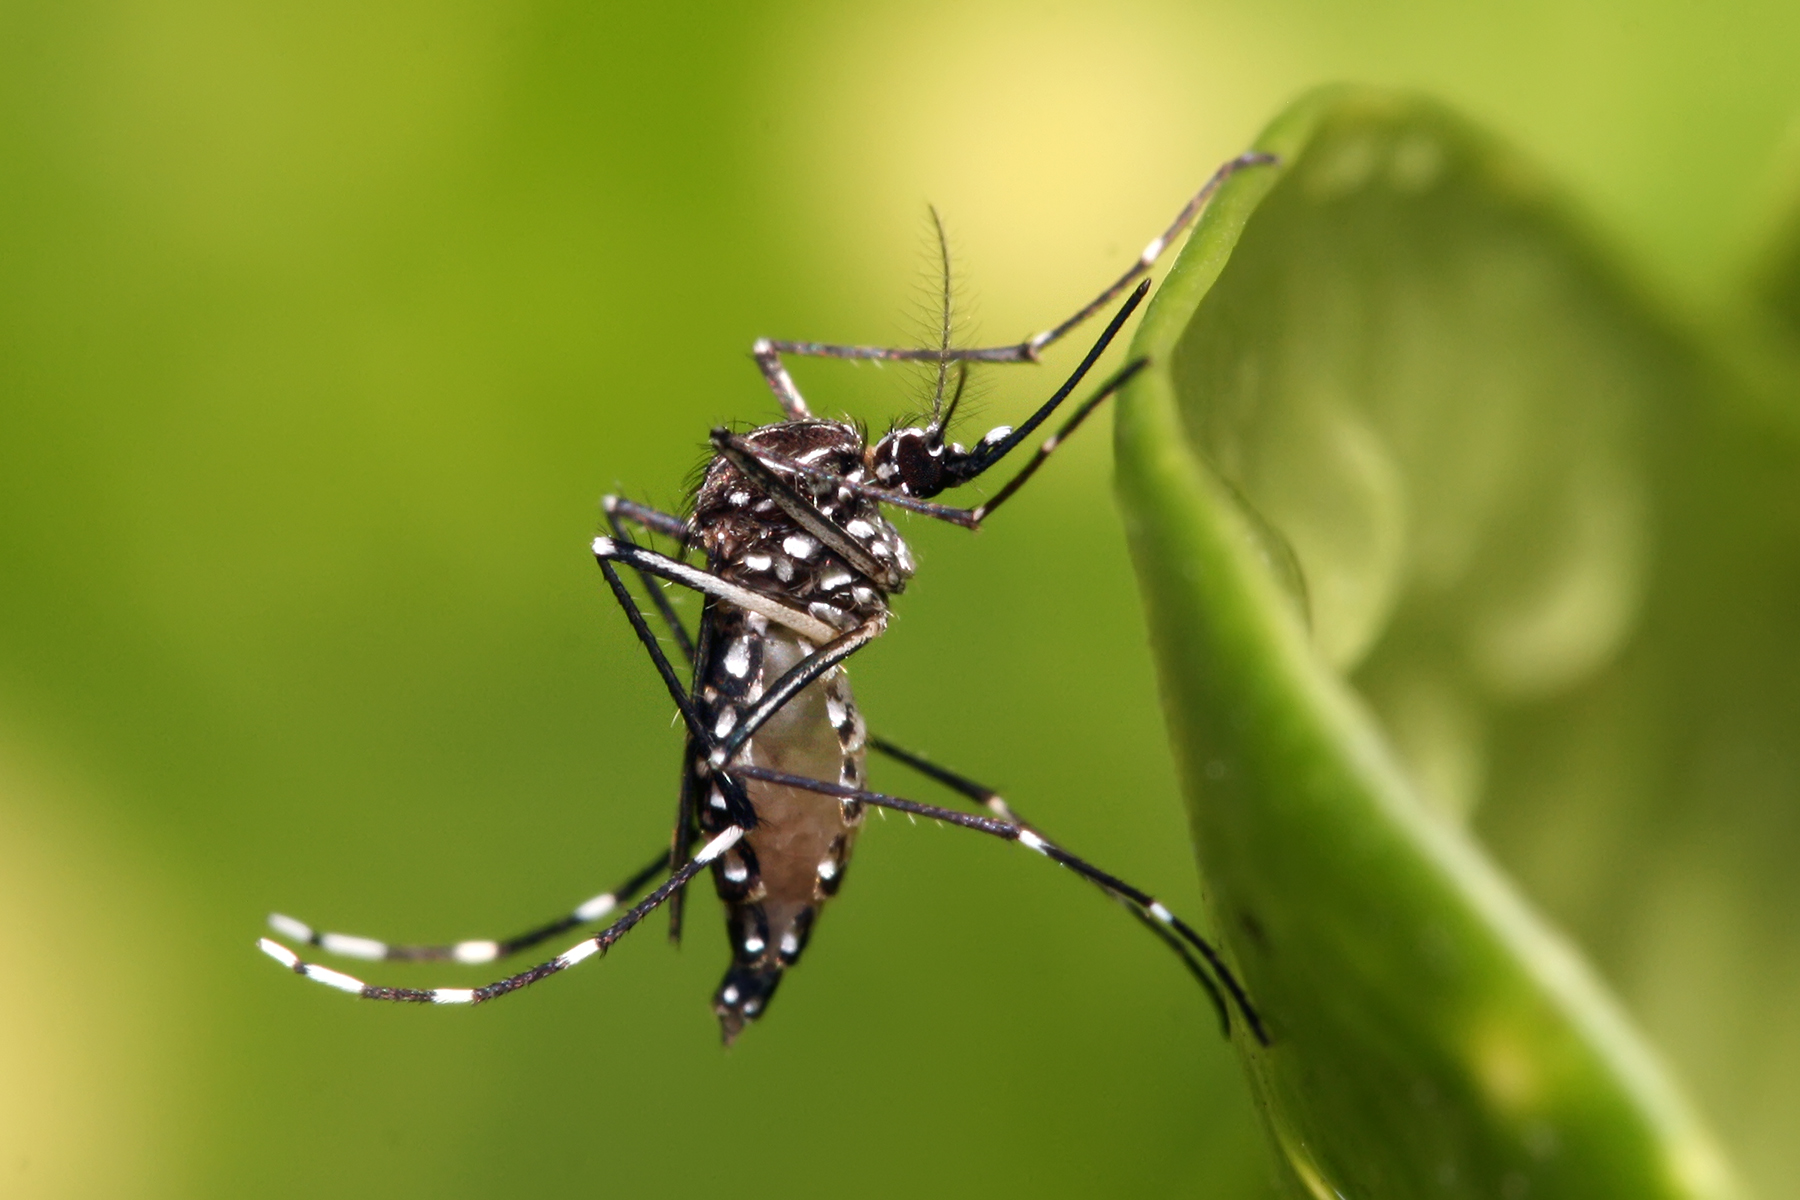 Mudanças climáticas podem disseminar dengue, diz relatório da UE